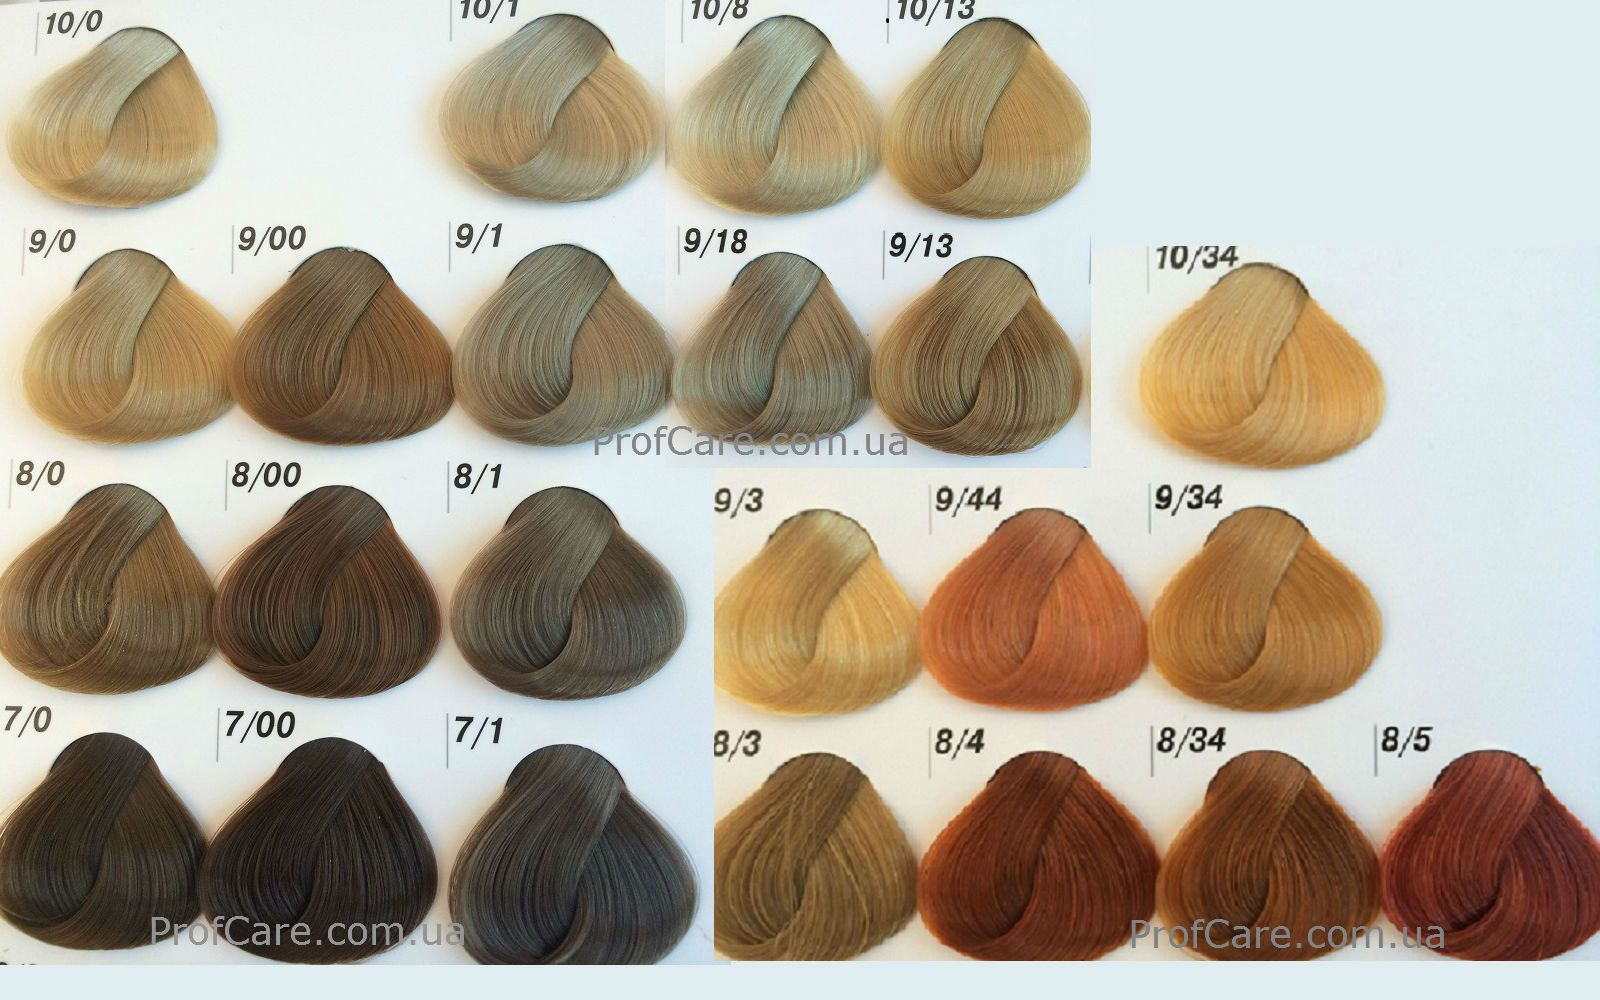 Палитра эстель профессиональная краска для волос с номерами красок с фото